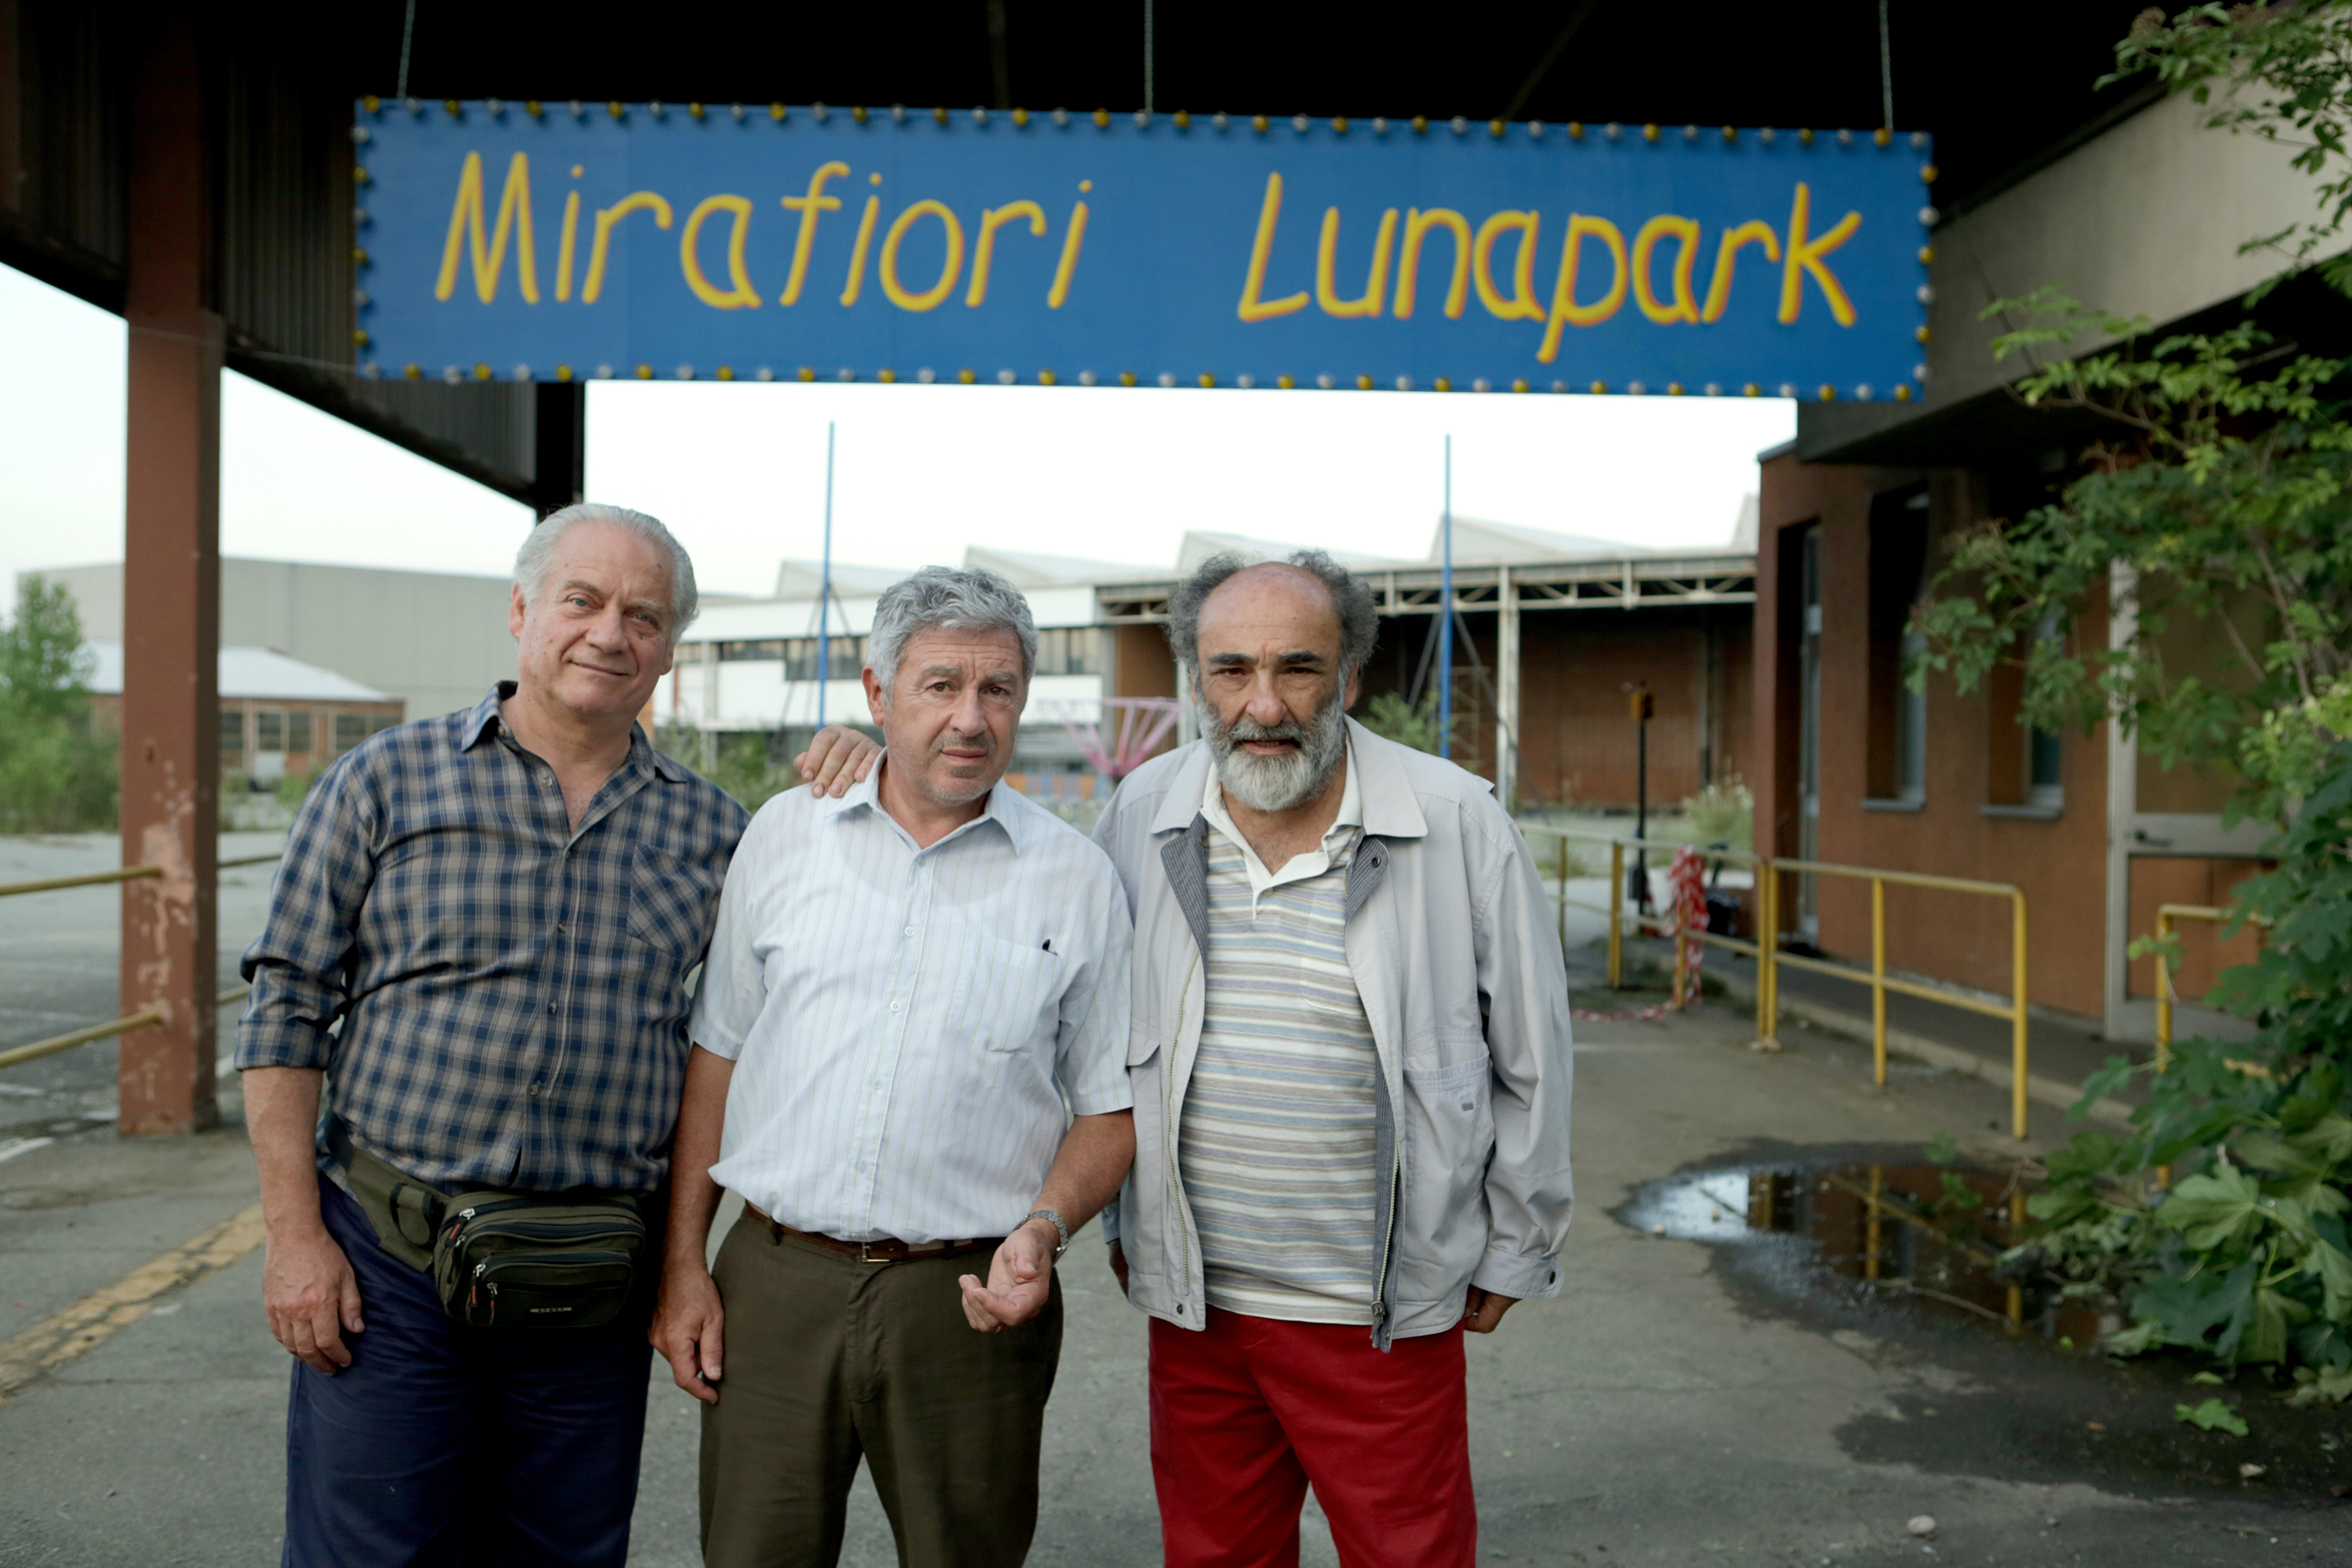 “Mirafiori Lunapark” il sogno di tre pensionati di trasformare l’azienda in lunapark